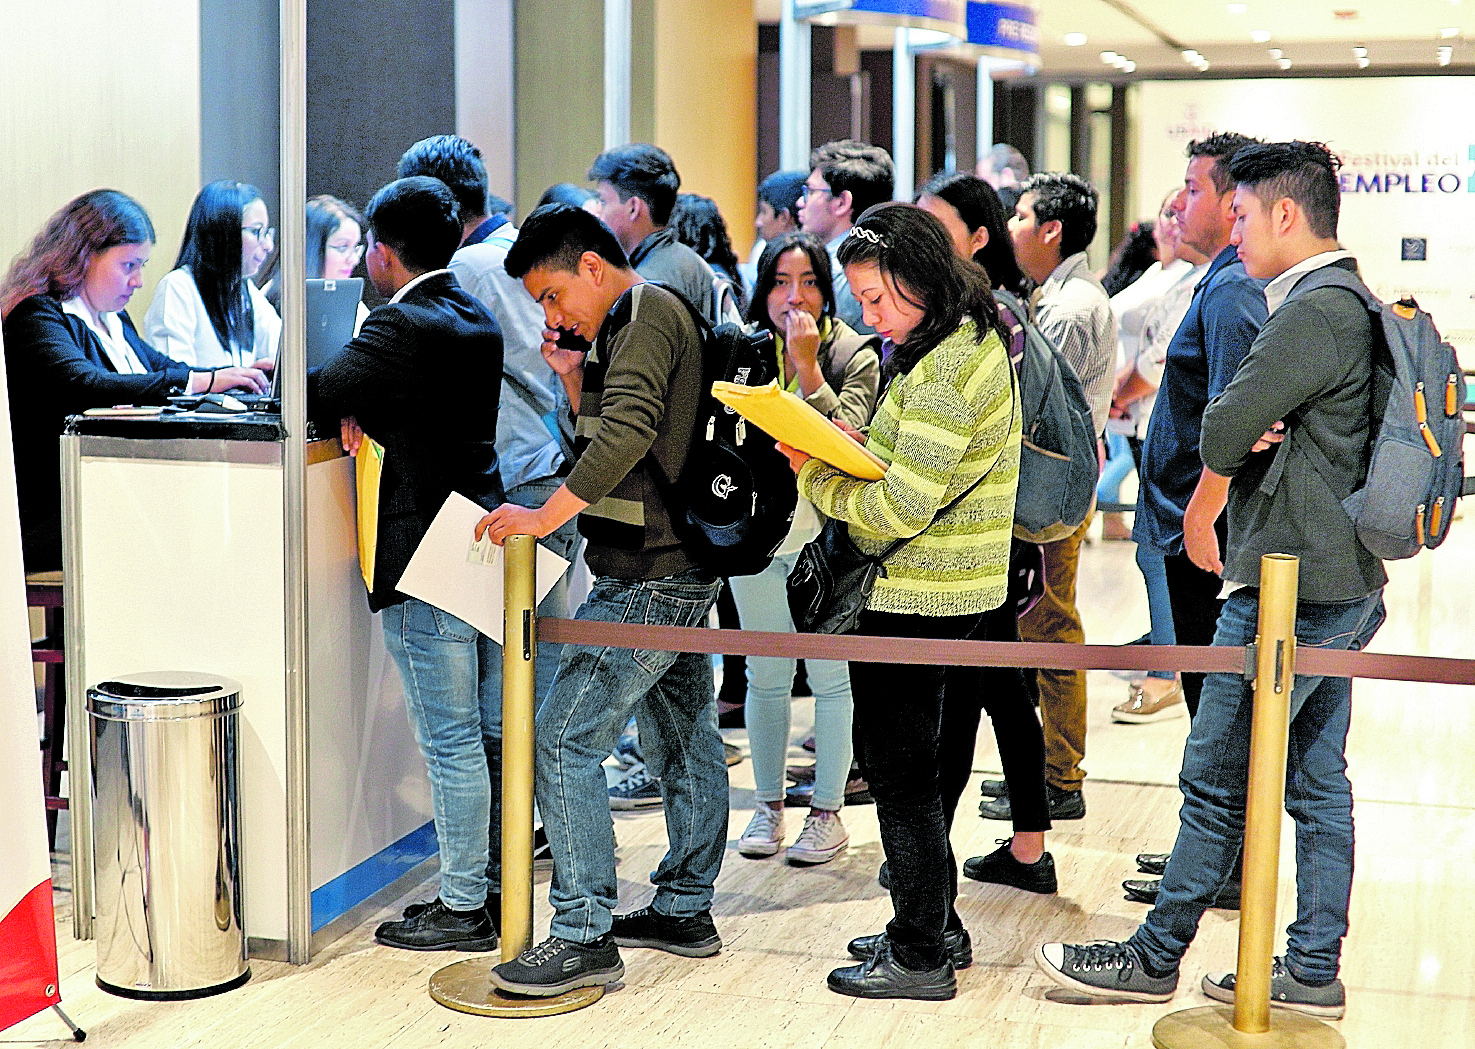 A las ferias de empleo suelen llegar personas jóvenes. (Foto Prensa Libre: Hemeroteca PL)